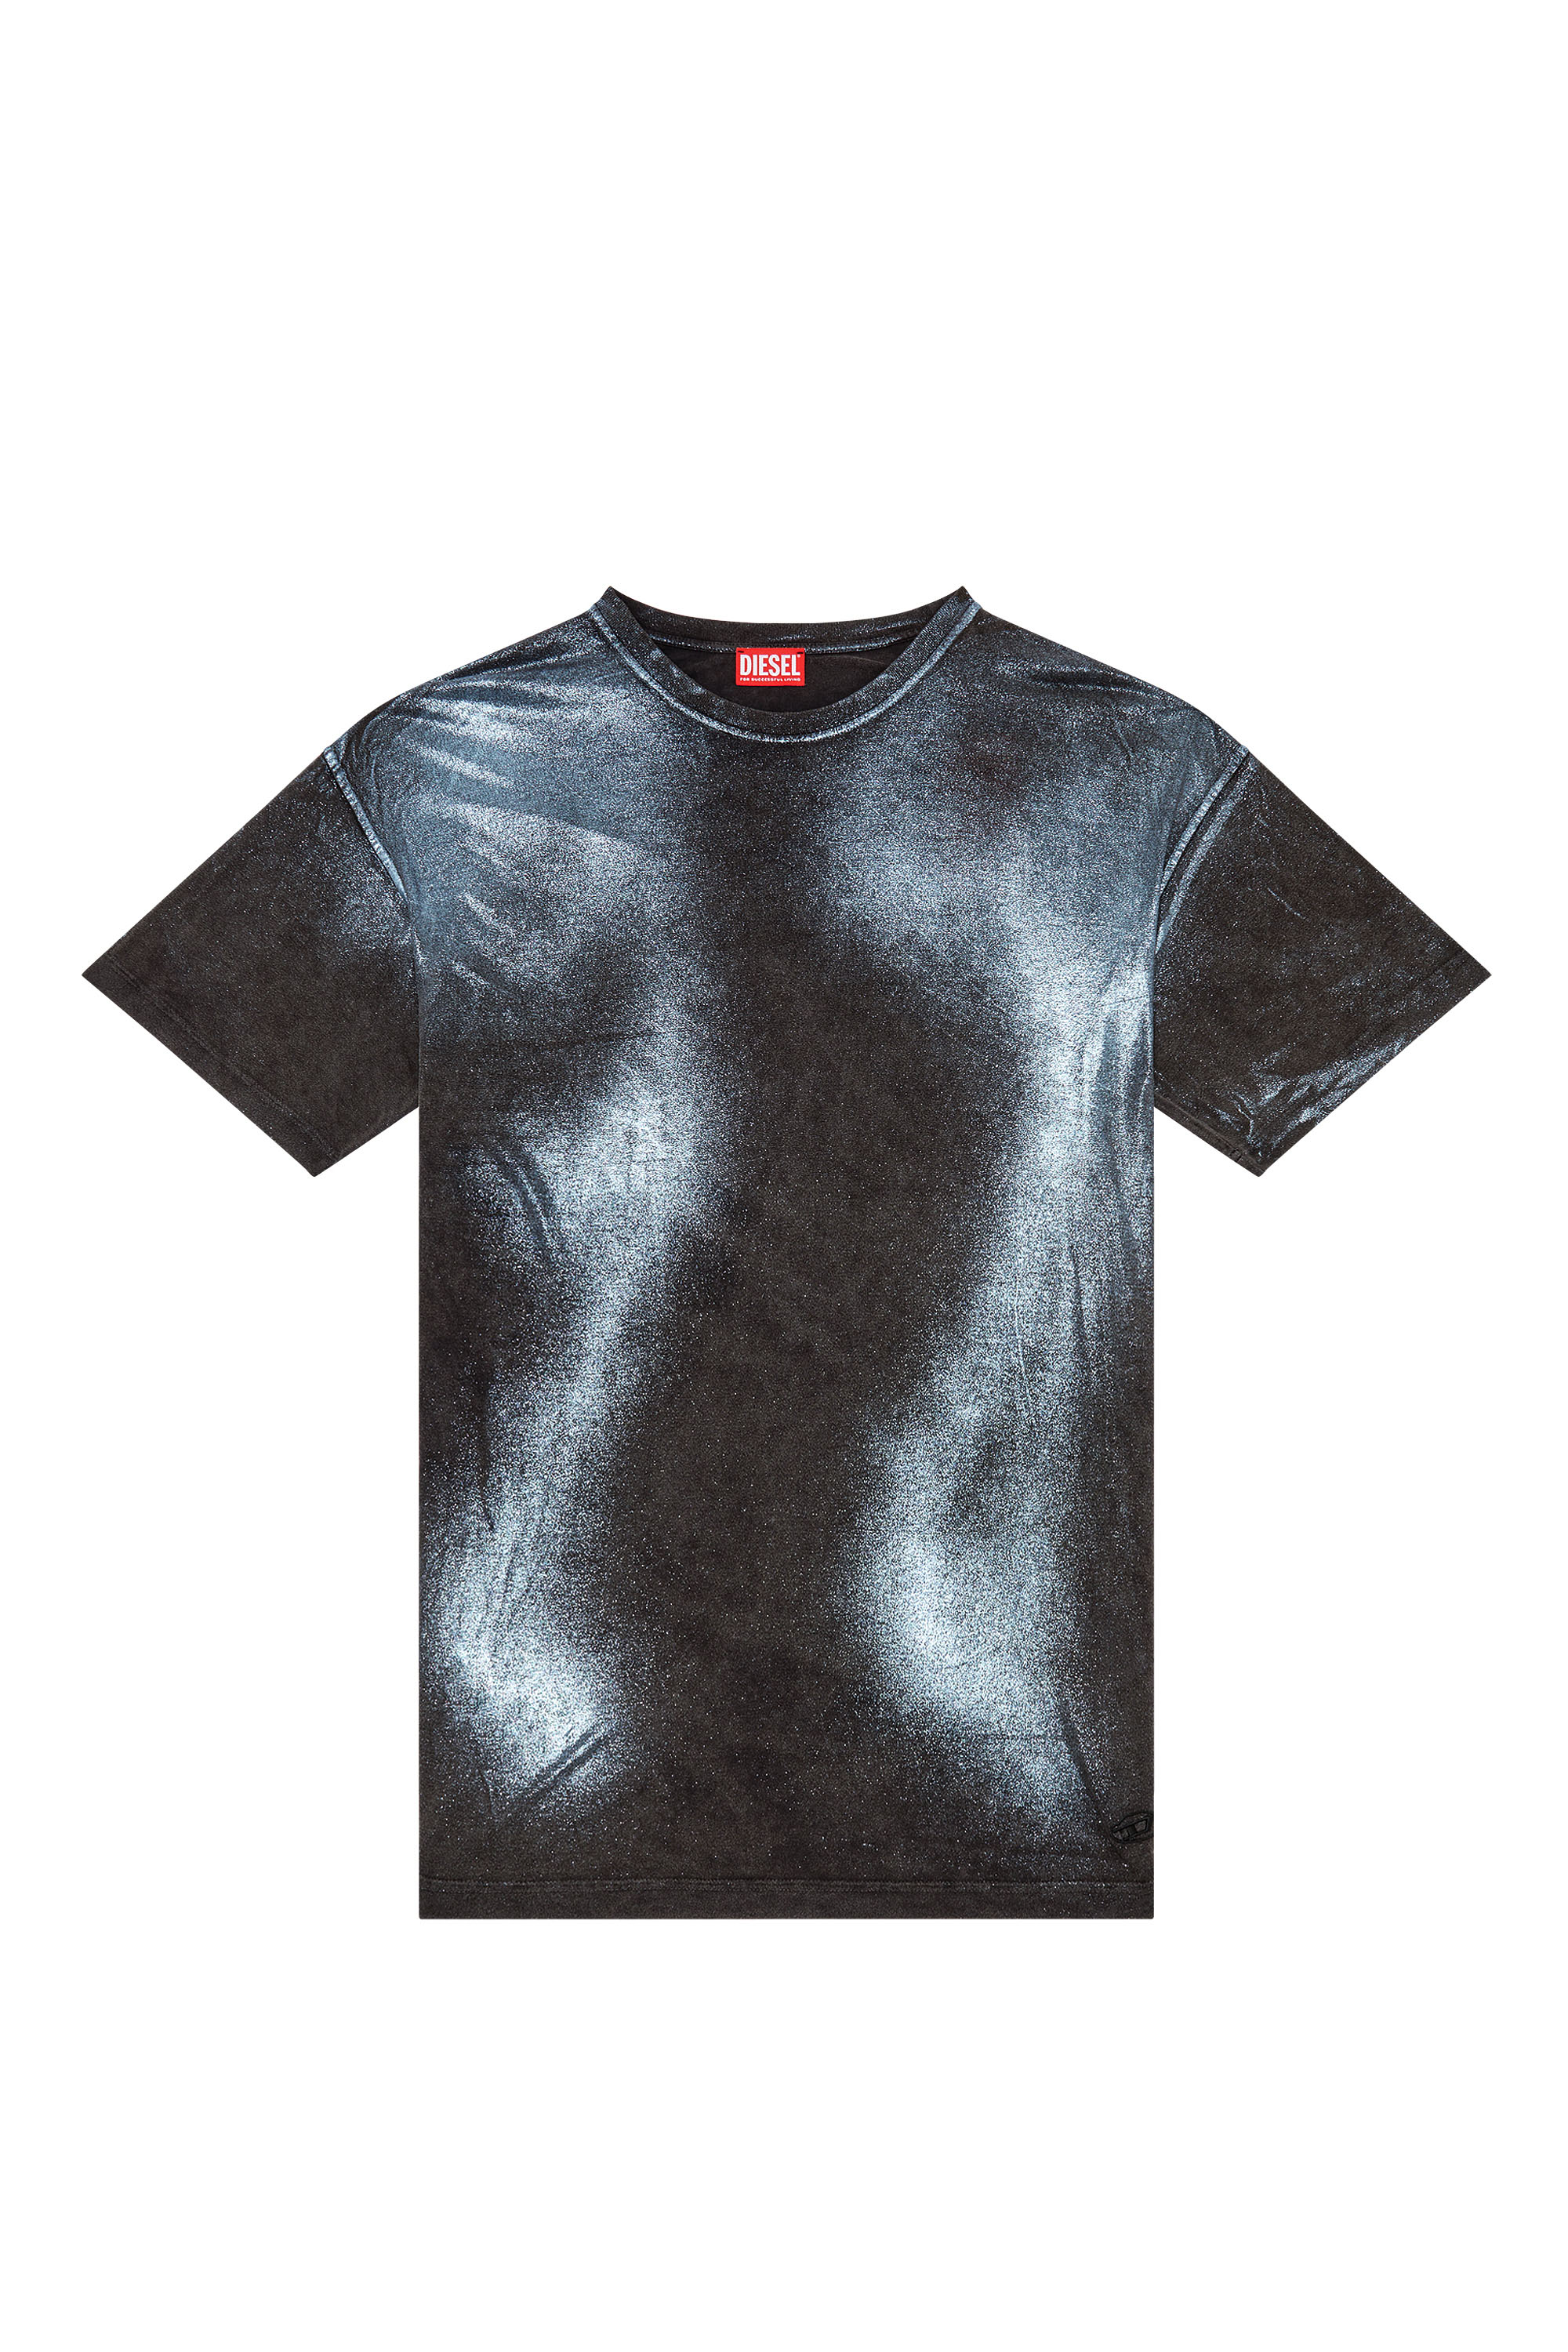 Diesel - T-BUXT, Homme T-shirt métallisé délavé in Polychrome - Image 1